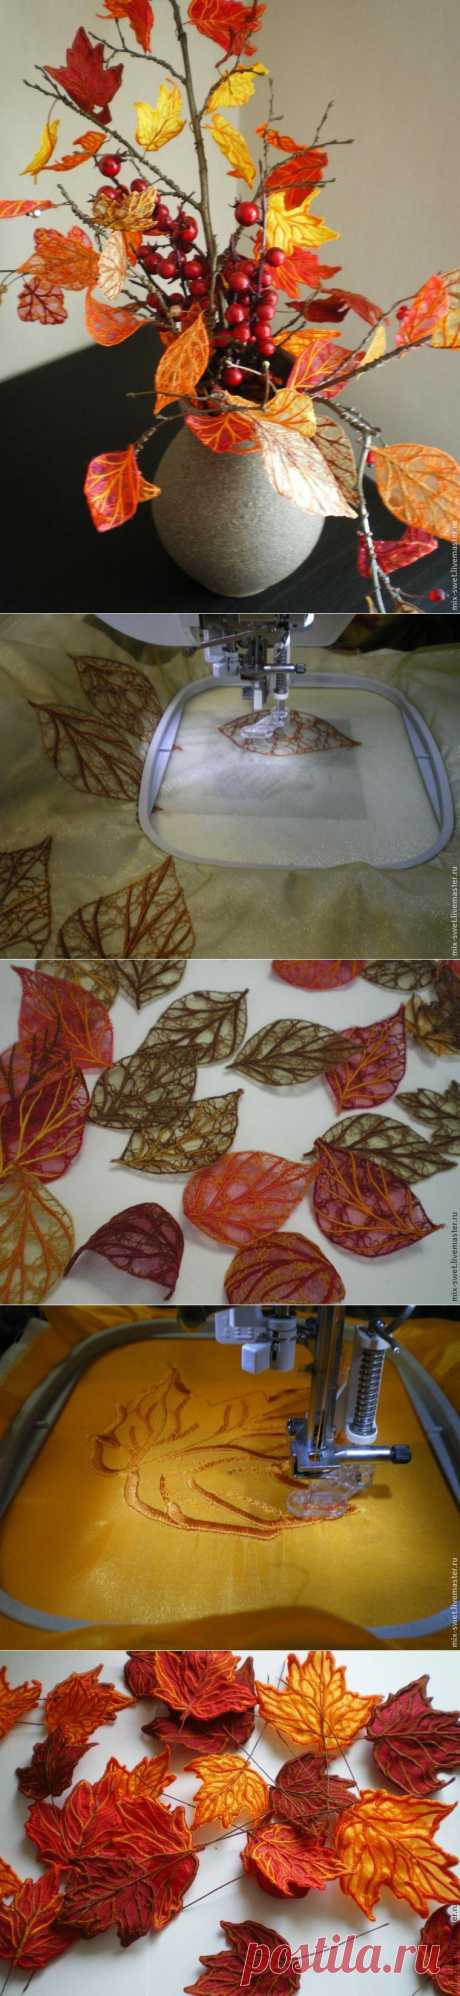 Осенний букет из вышитых листьев! (2 мастер-класса)